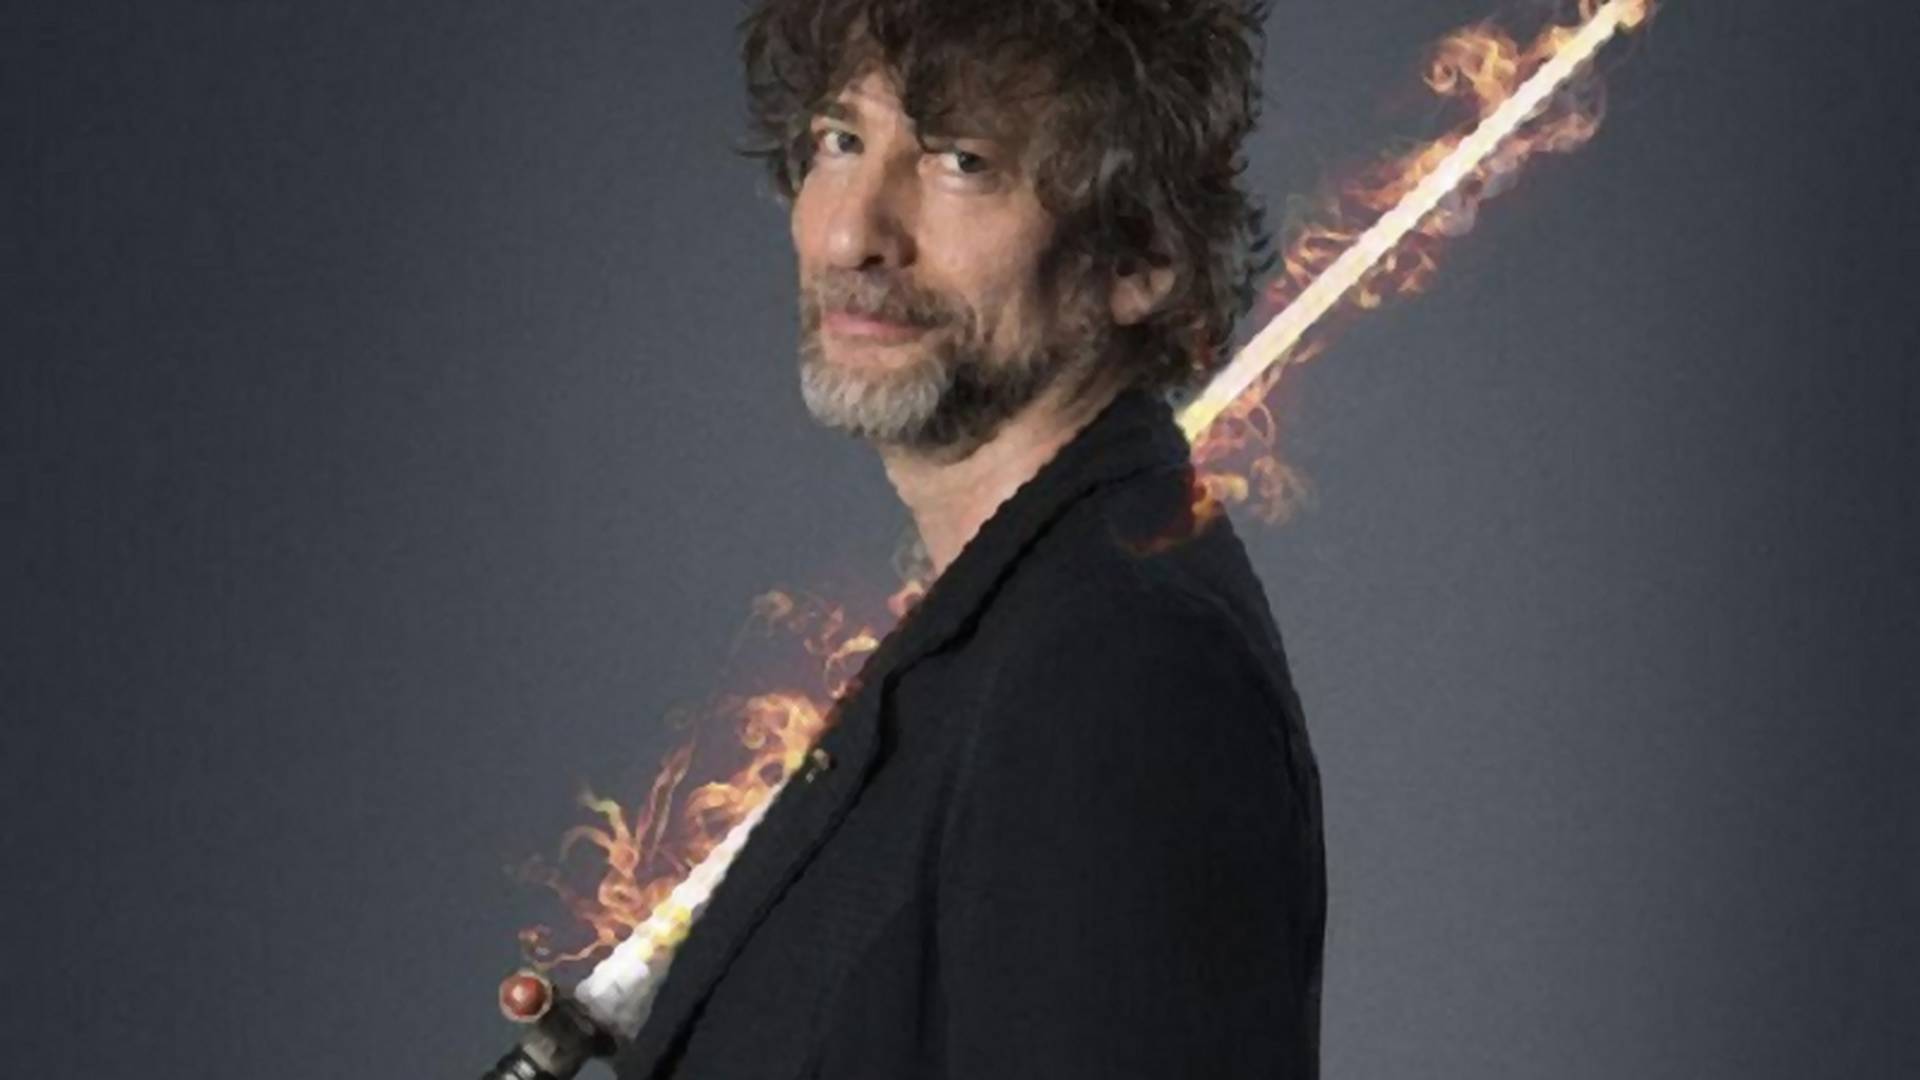 Neil Gaiman rástartolt a BBC népszerű scifijére - Szívesen írna két-három részt a csatorna számára